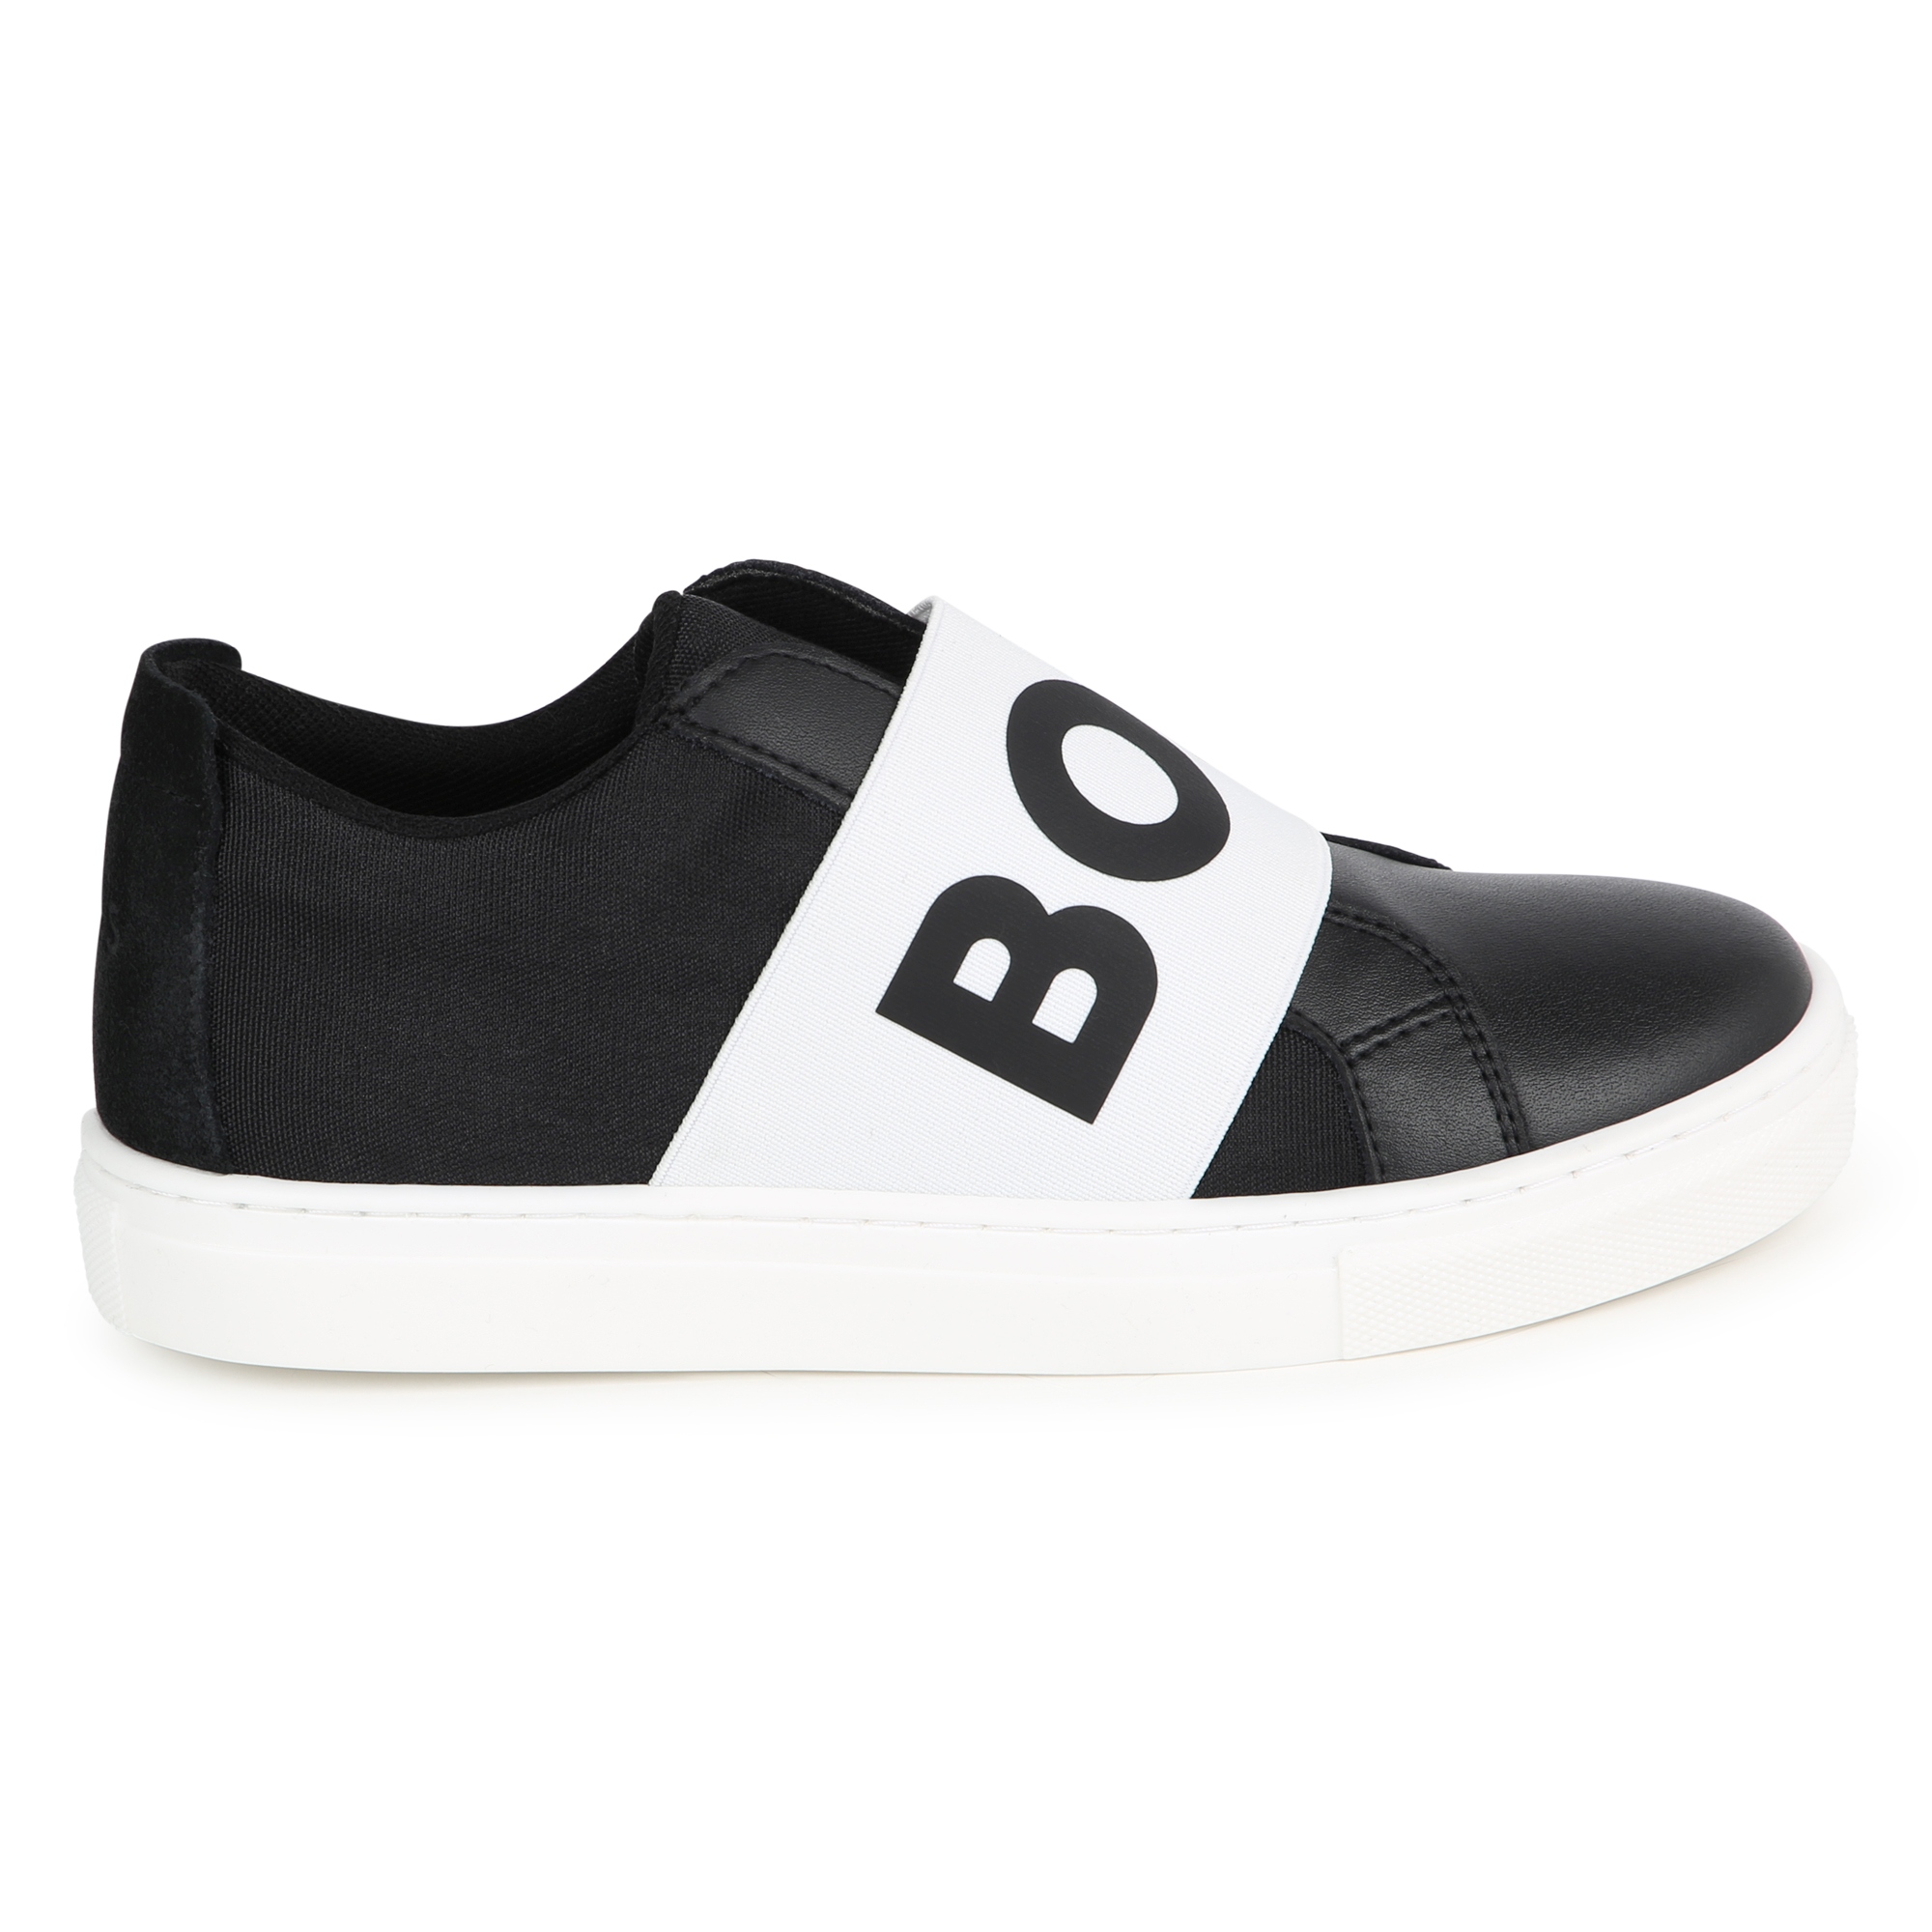 Sneakers mit Gummizug und Logo BOSS Für JUNGE